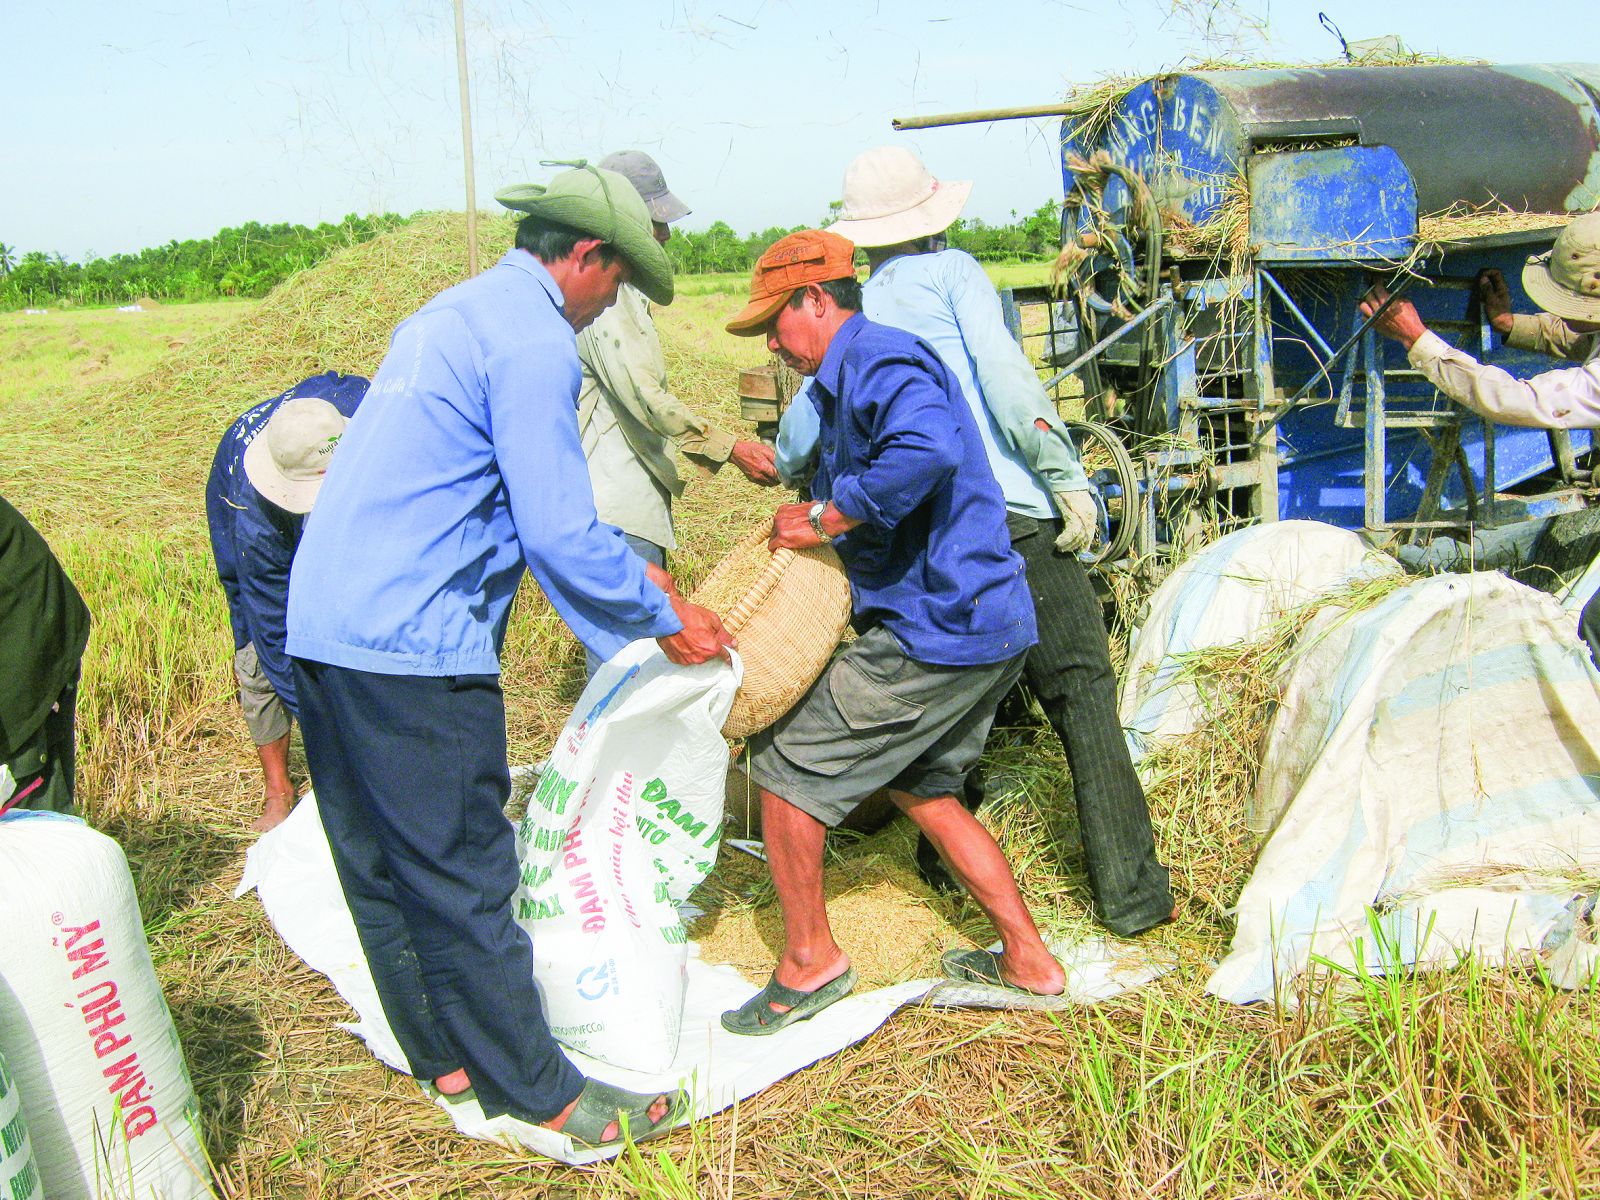 Nông dân trồng lúa ở ĐBSCL luôn chịu nhiều rủi ro do tác động của biến đổi khí hậu làm ảnh hưởng đến năng suất, lợi nhuận. Ảnh: M. HUYỀN